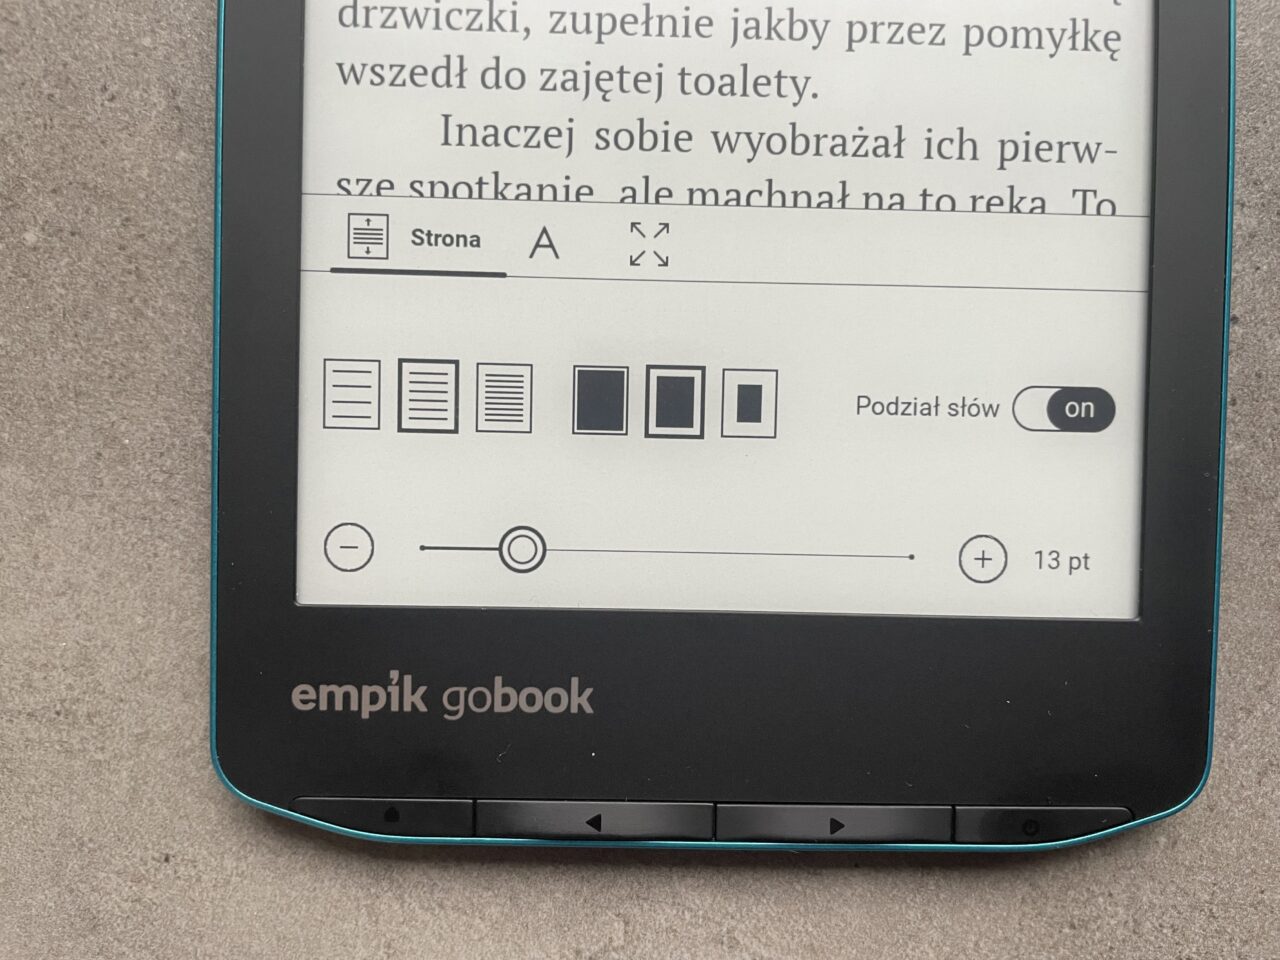 Część ekranu czytnika e-booków z tekstami i opcjami formatowania, w tle szary materiał.